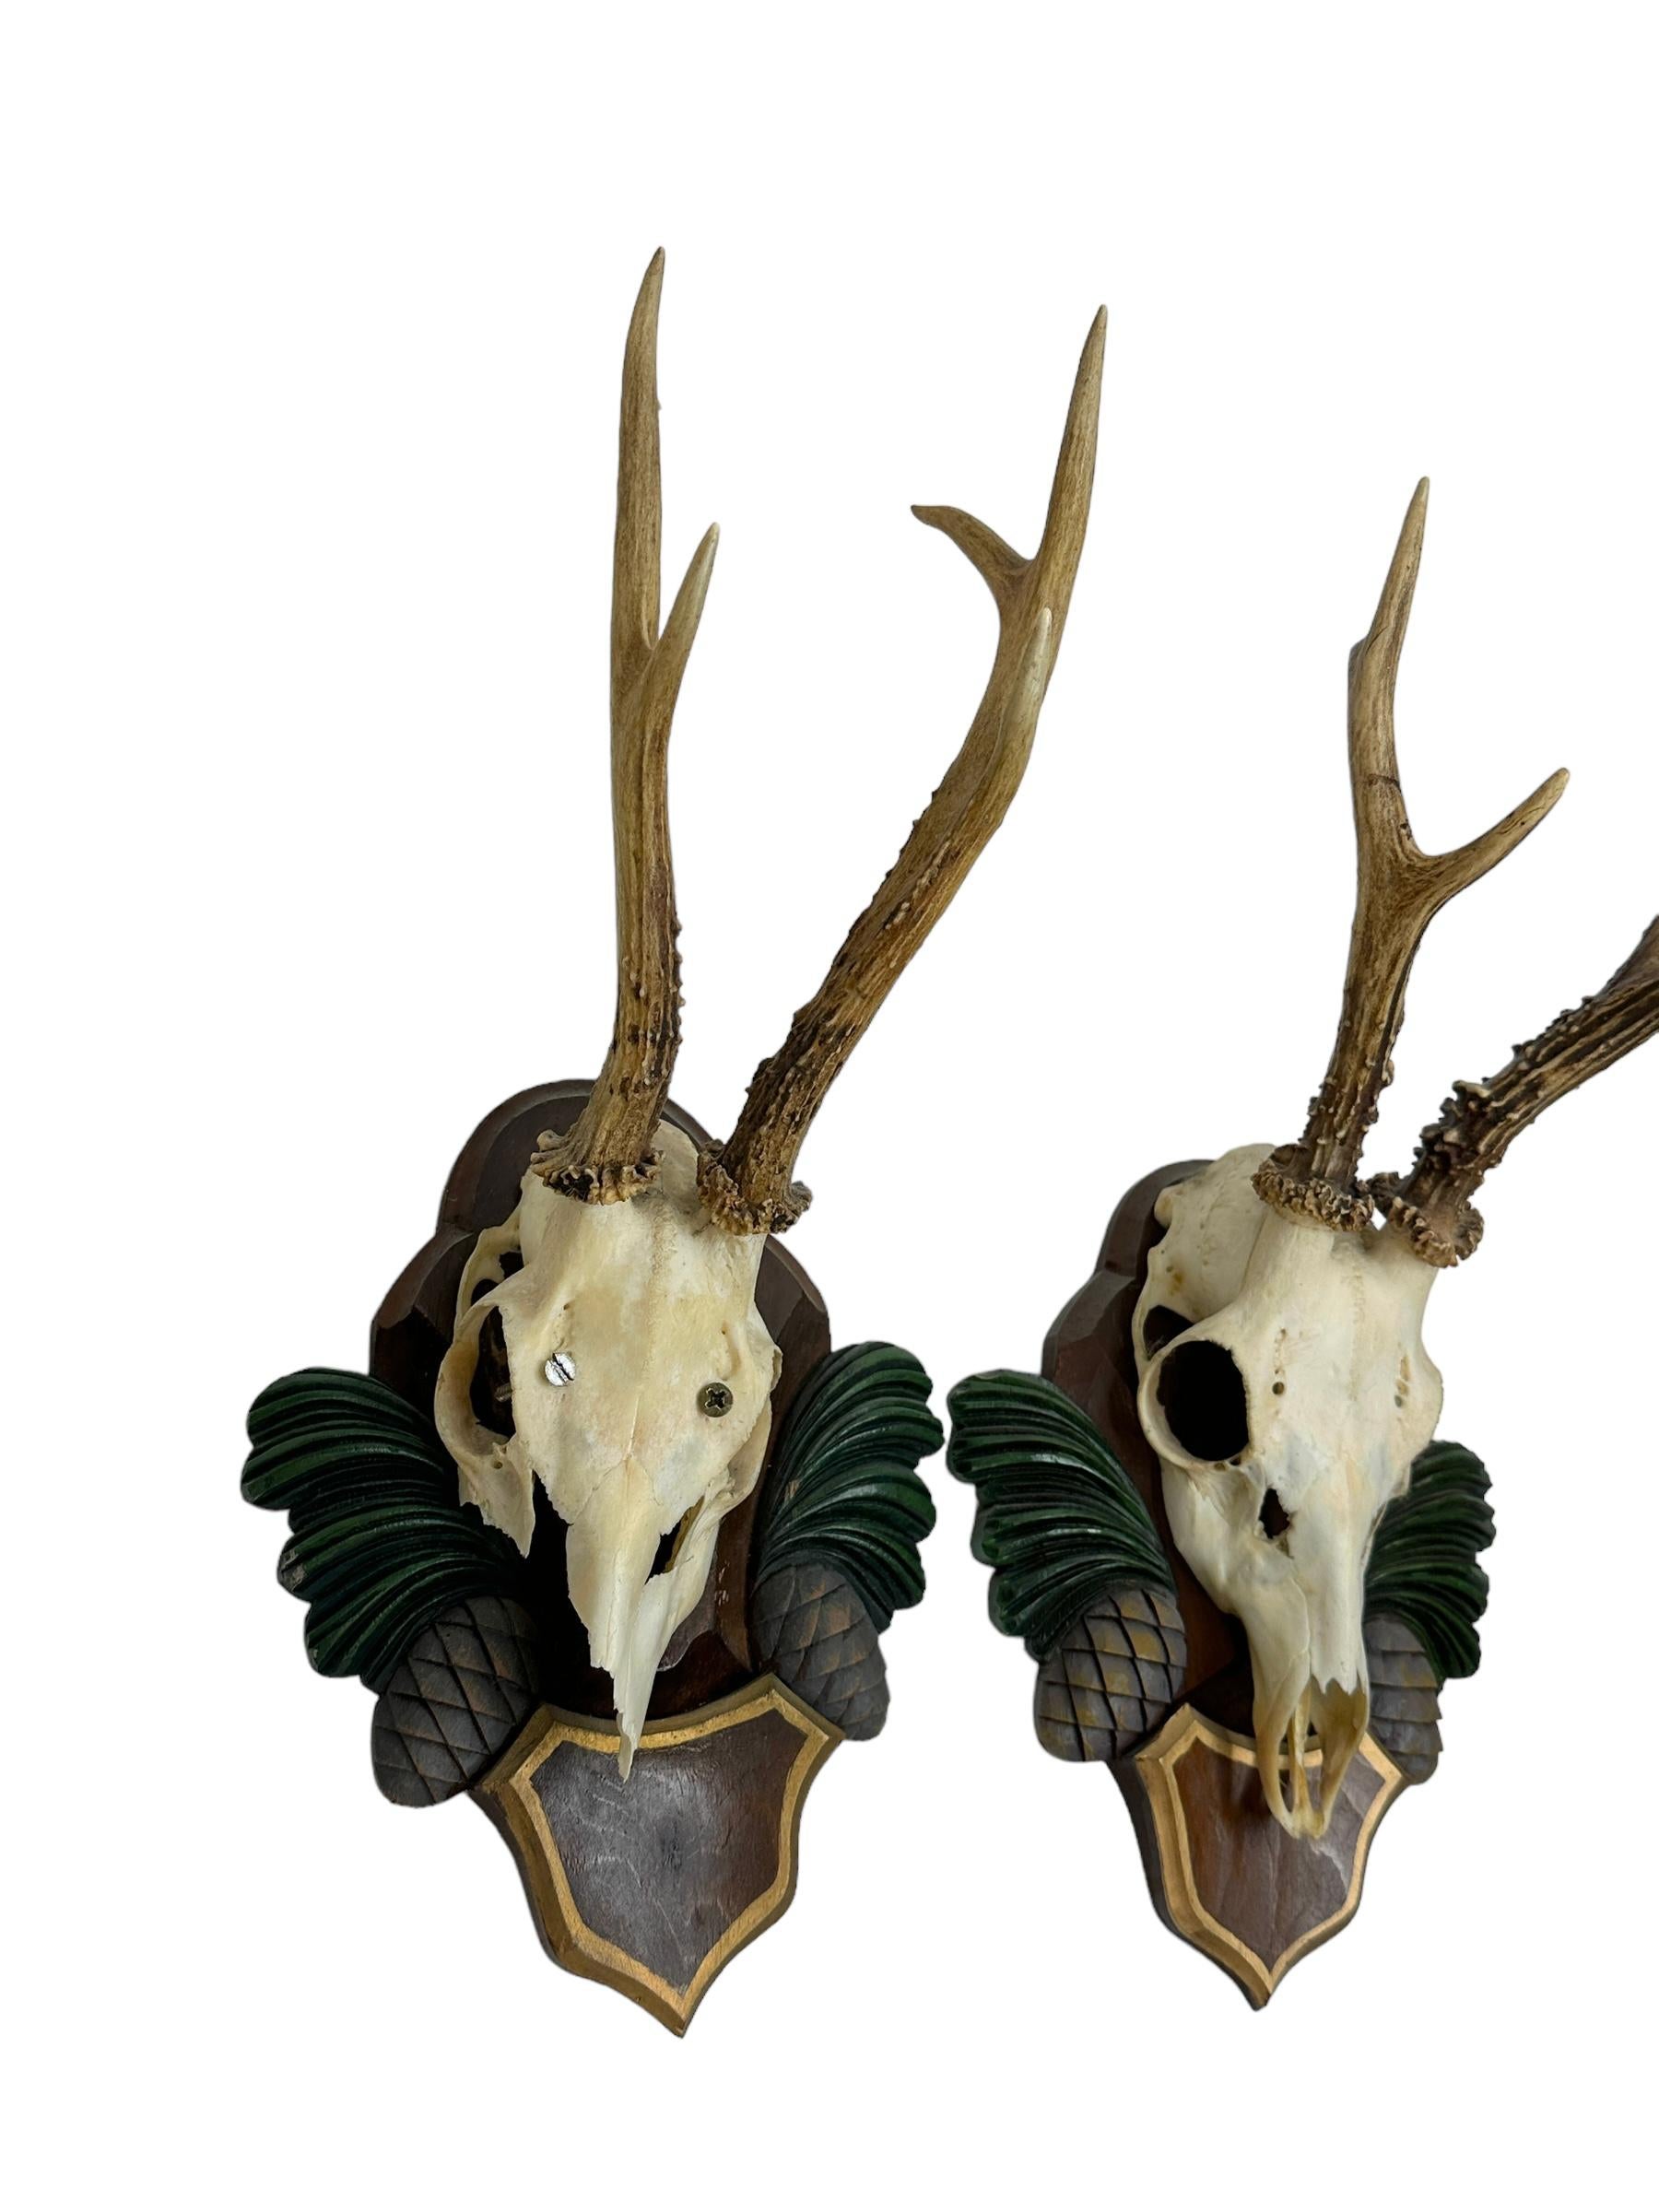 Two Deer Antler Mount Trophy Black Forest Carved Wood Plaque Austria Folk Art  In Good Condition For Sale In Nuernberg, DE